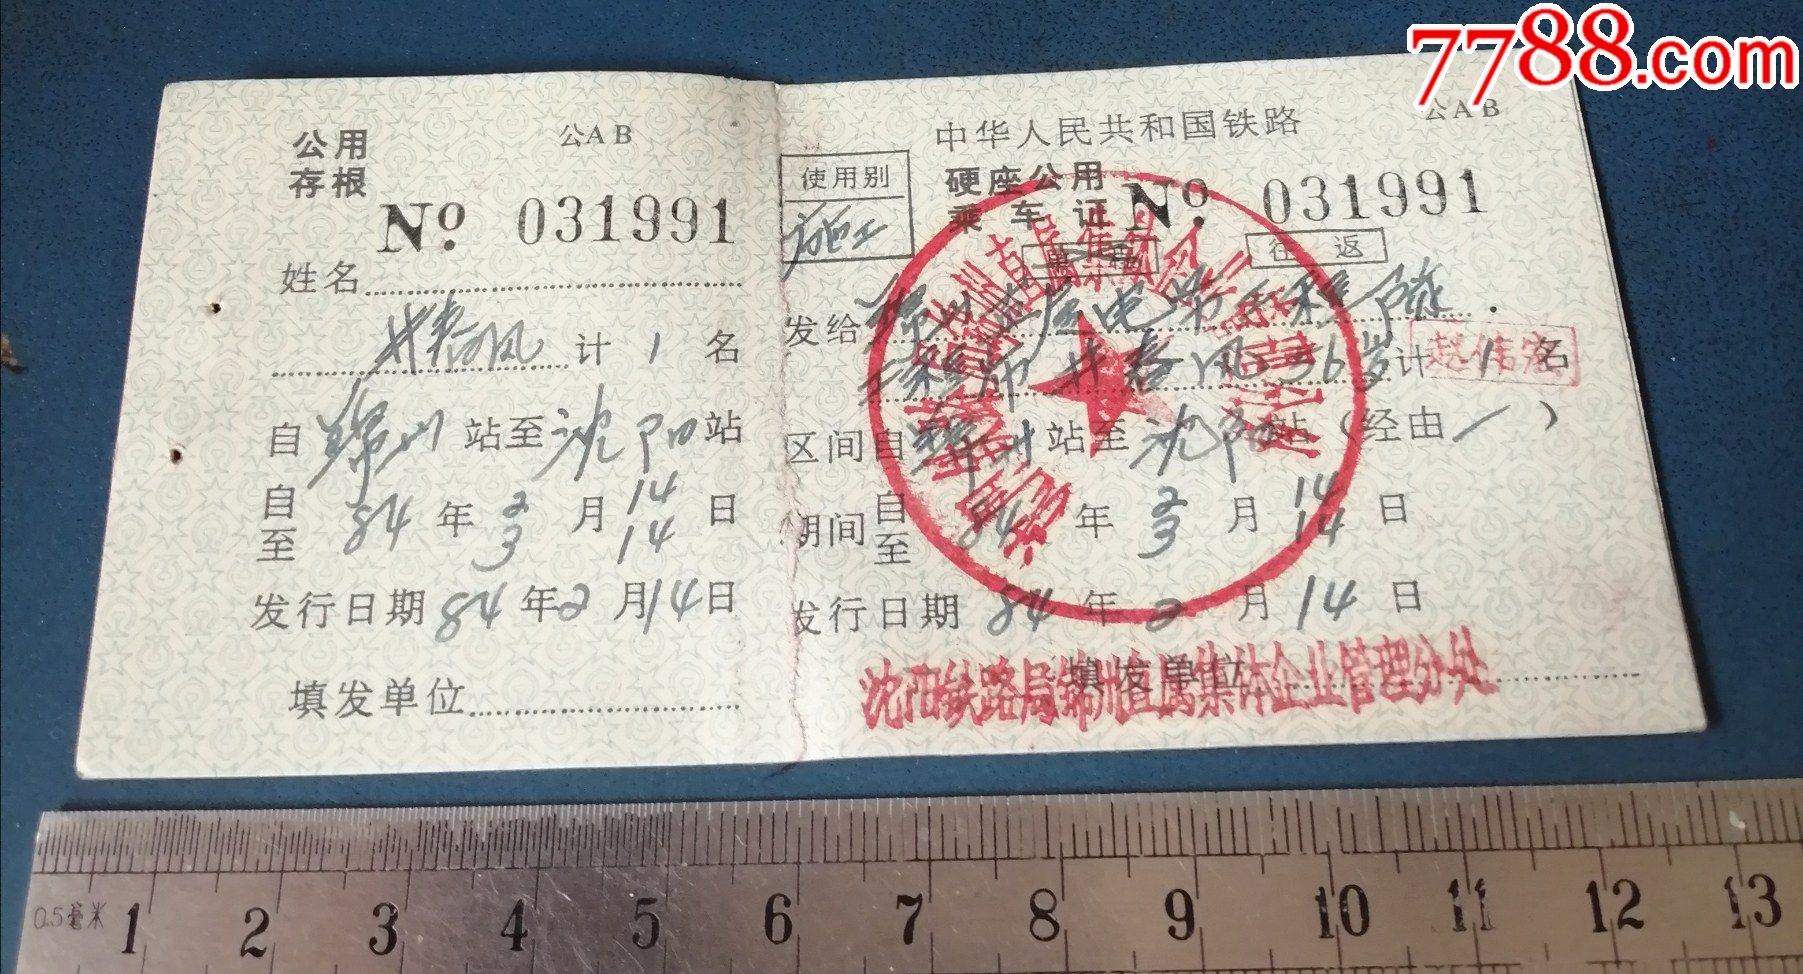 旅游列车车票1998年凤凰城站至锦州站Y244次、沈阳中转，两人四张；锦州至海城_火车票_收藏价格_交易出手_7788人民币收藏